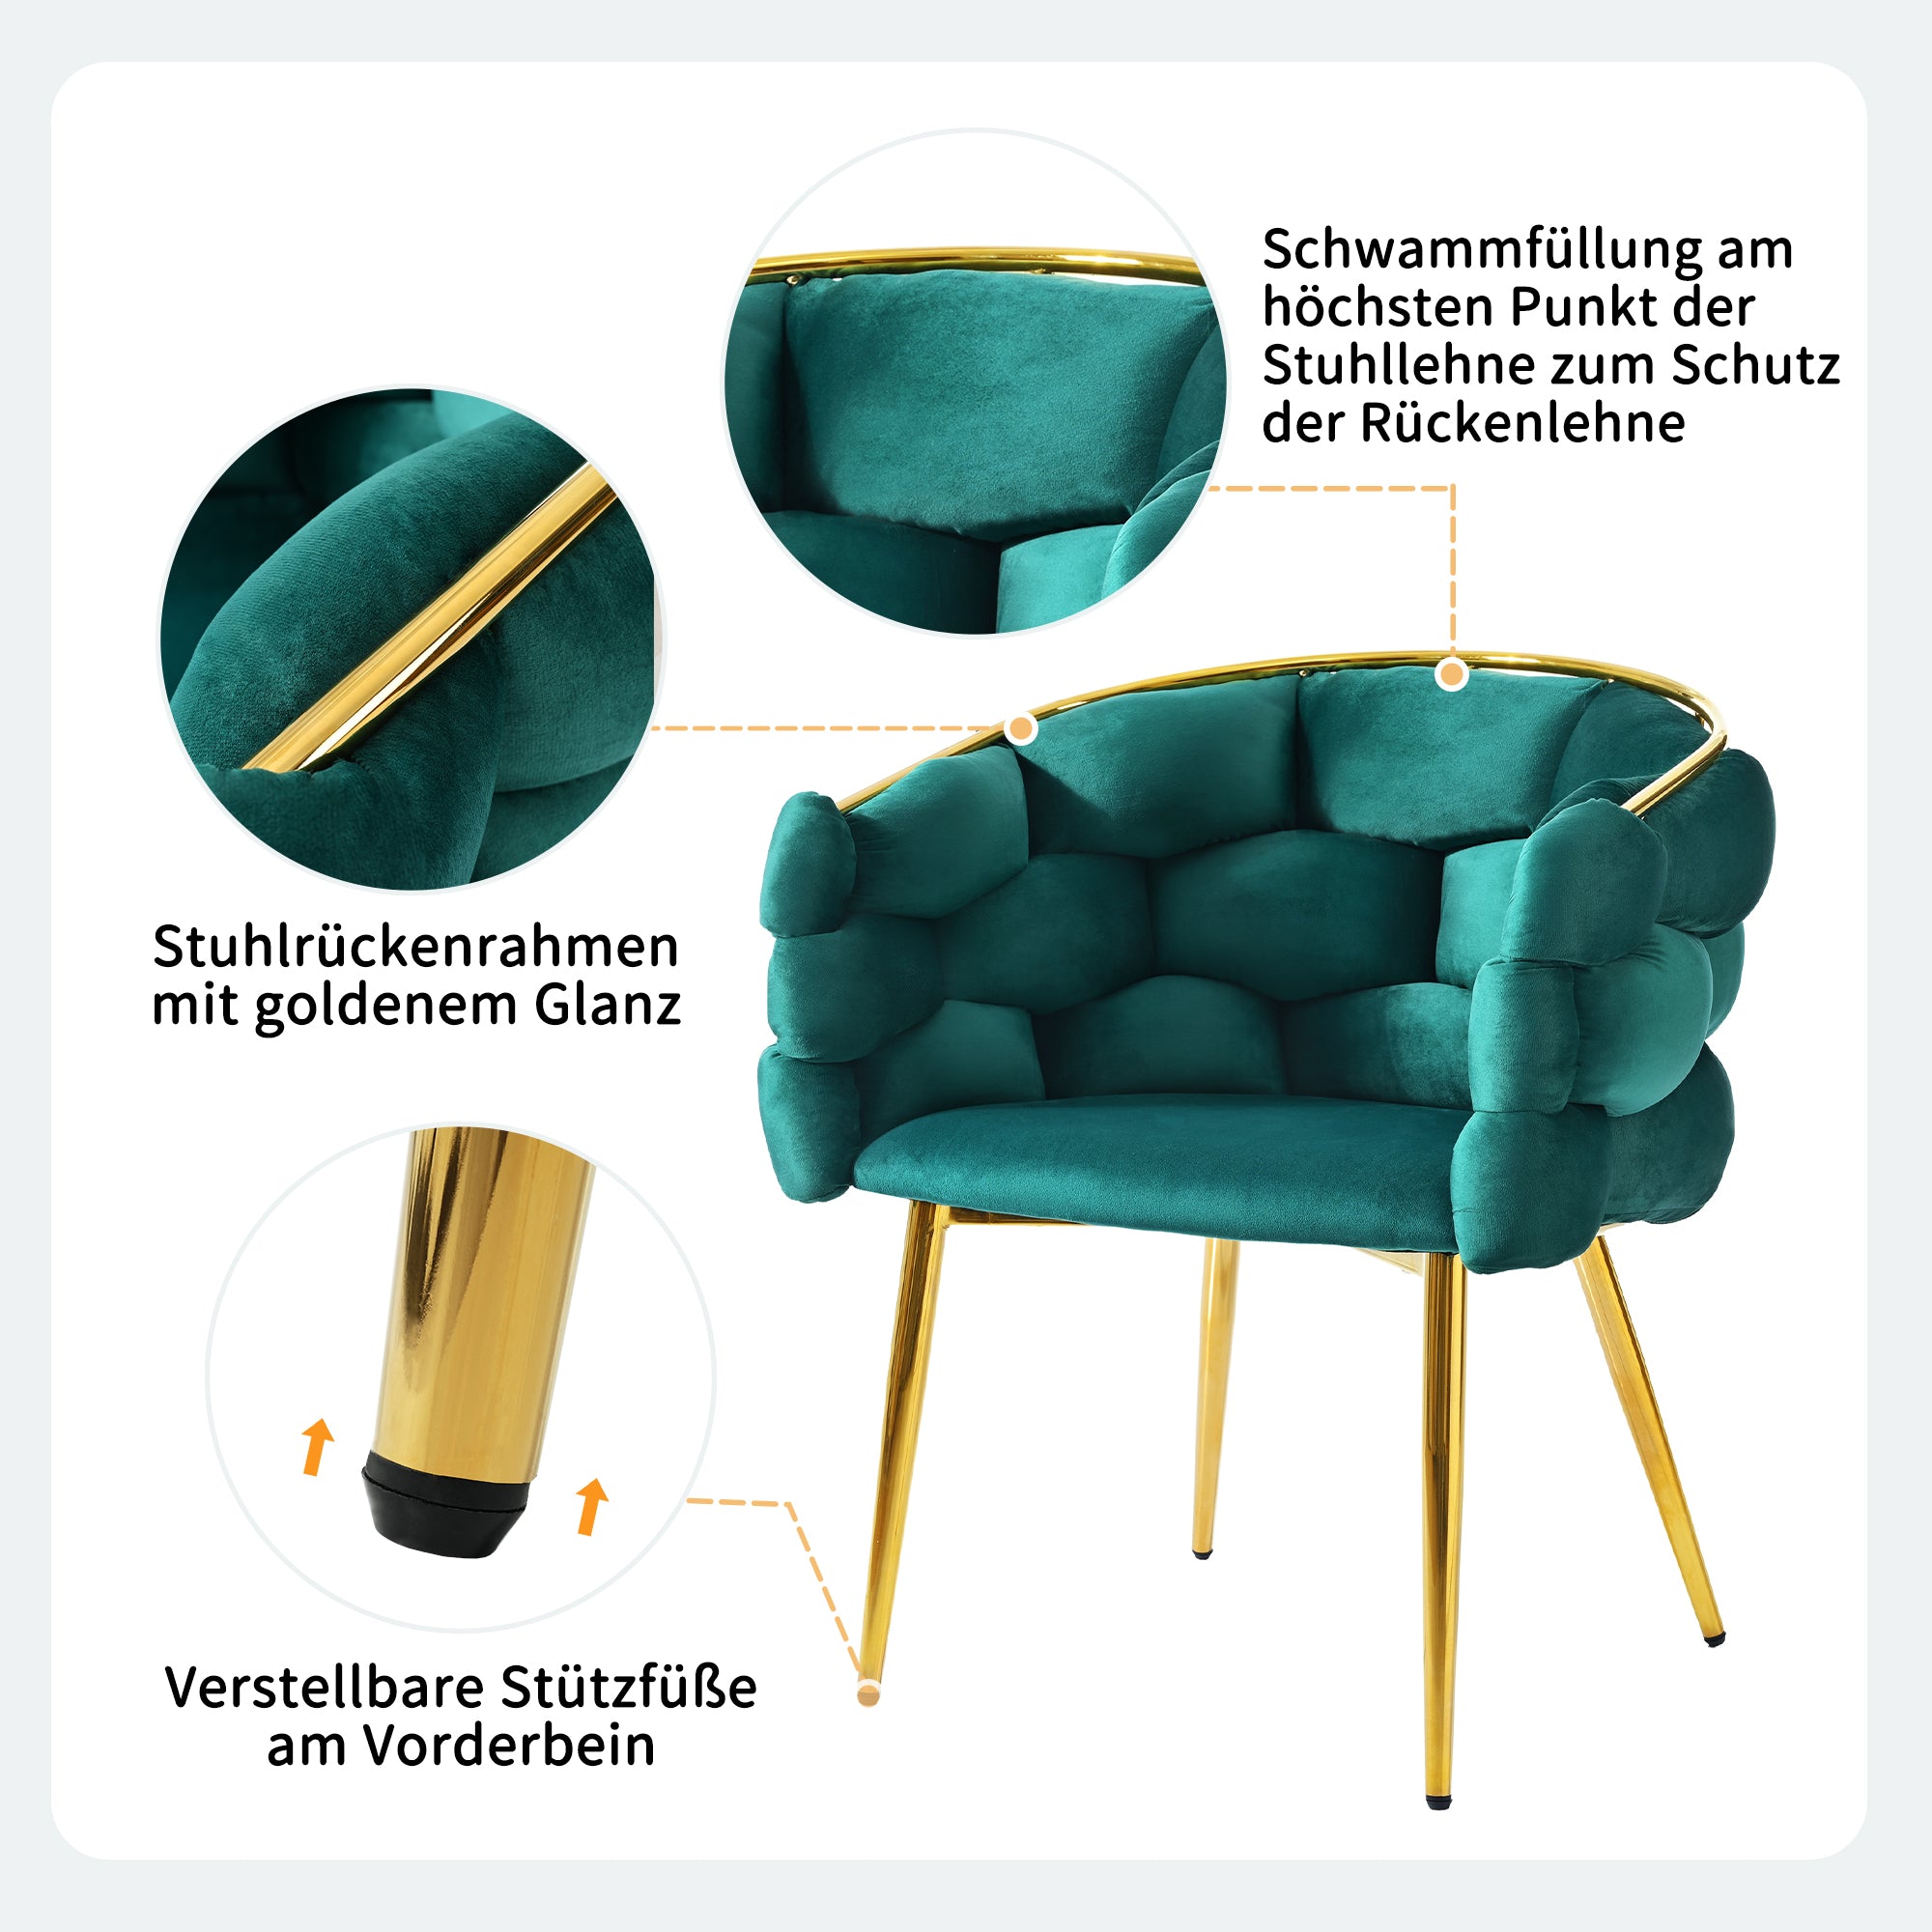 1 okwish Luxus-Samtstuhl (je 1 Satz Wohnzimmerstuhl, Esszimmerstuhl, Make-up-Stuhl, moderner Modestuhl), vergoldete Eisenbeine, grüner Stuhl, Bubble-Stuhl